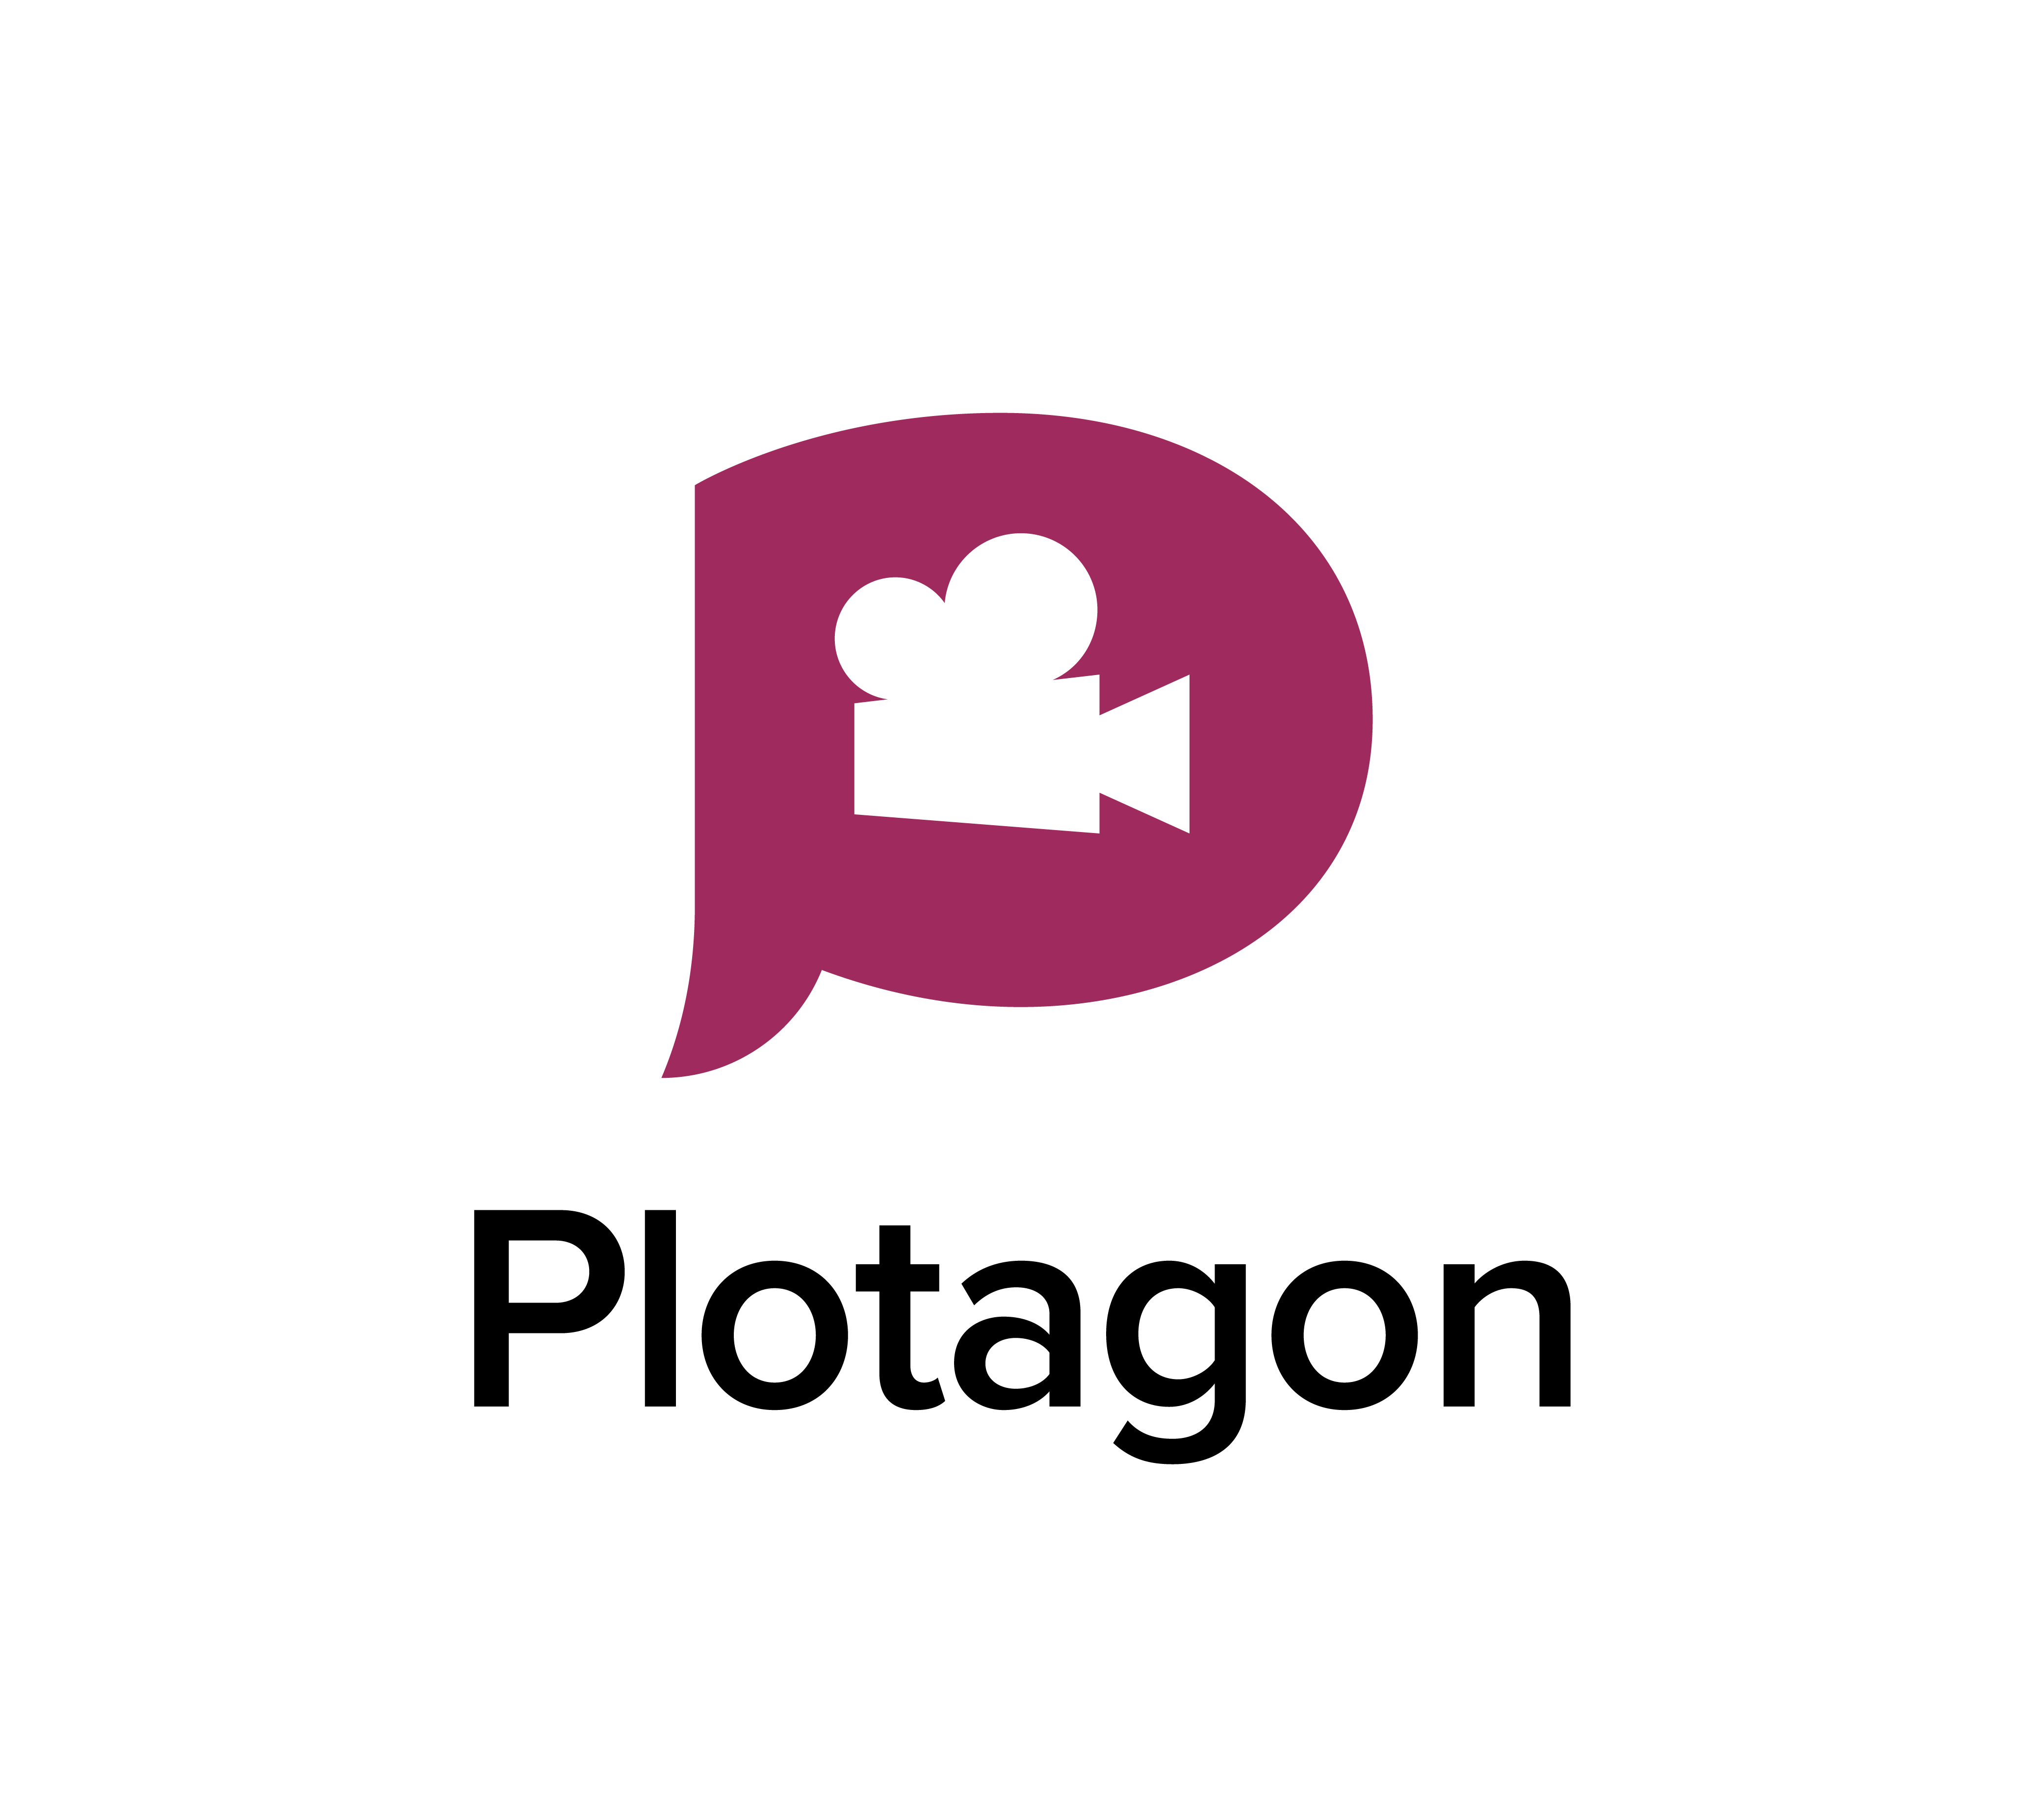 plotagon 1.2.1 xp download